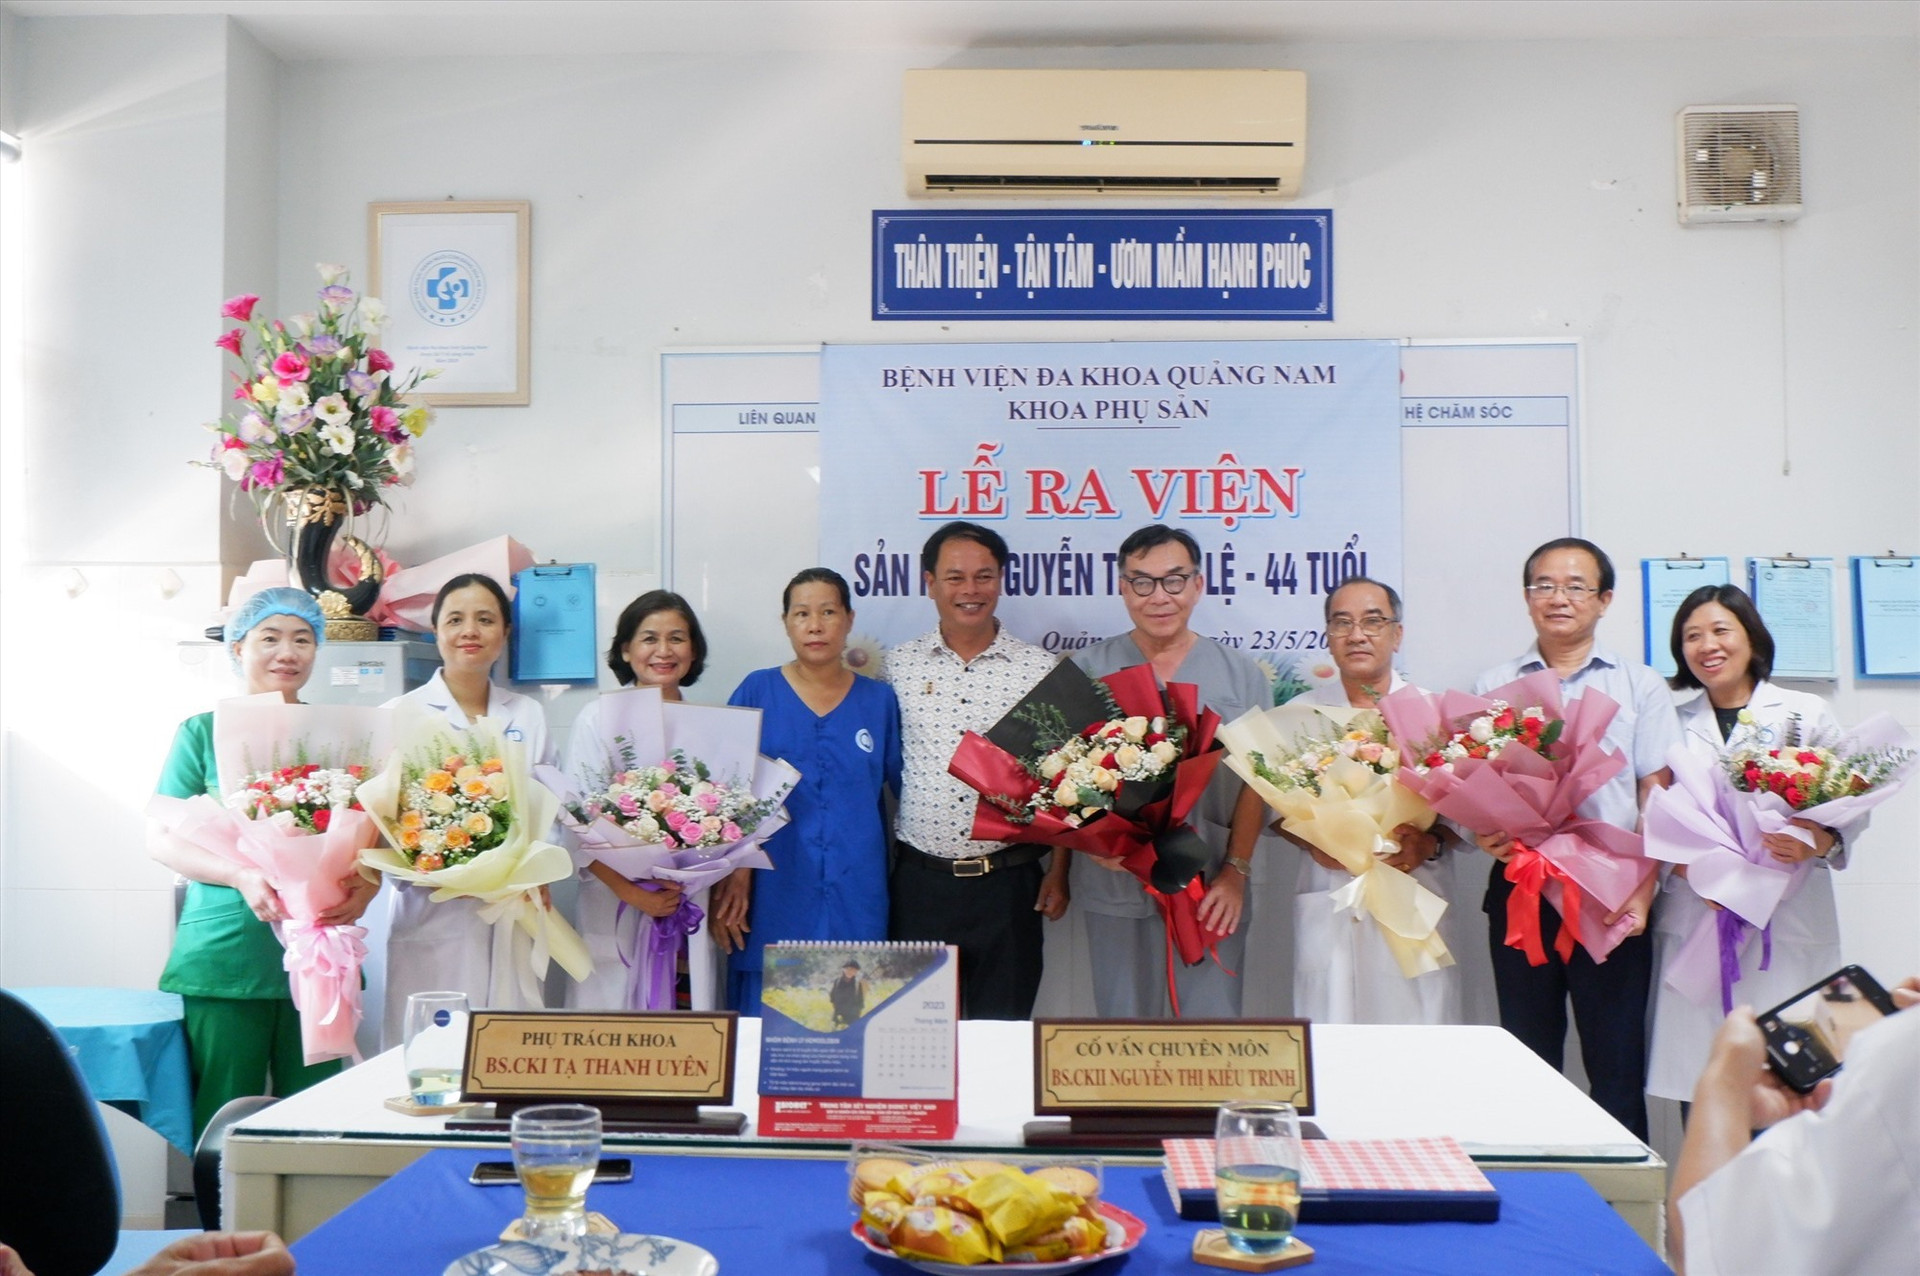 BVĐK tỉnh Quảng Nam tổ chức lễ ra viện cho bệnh nhân. Ảnh: X.H